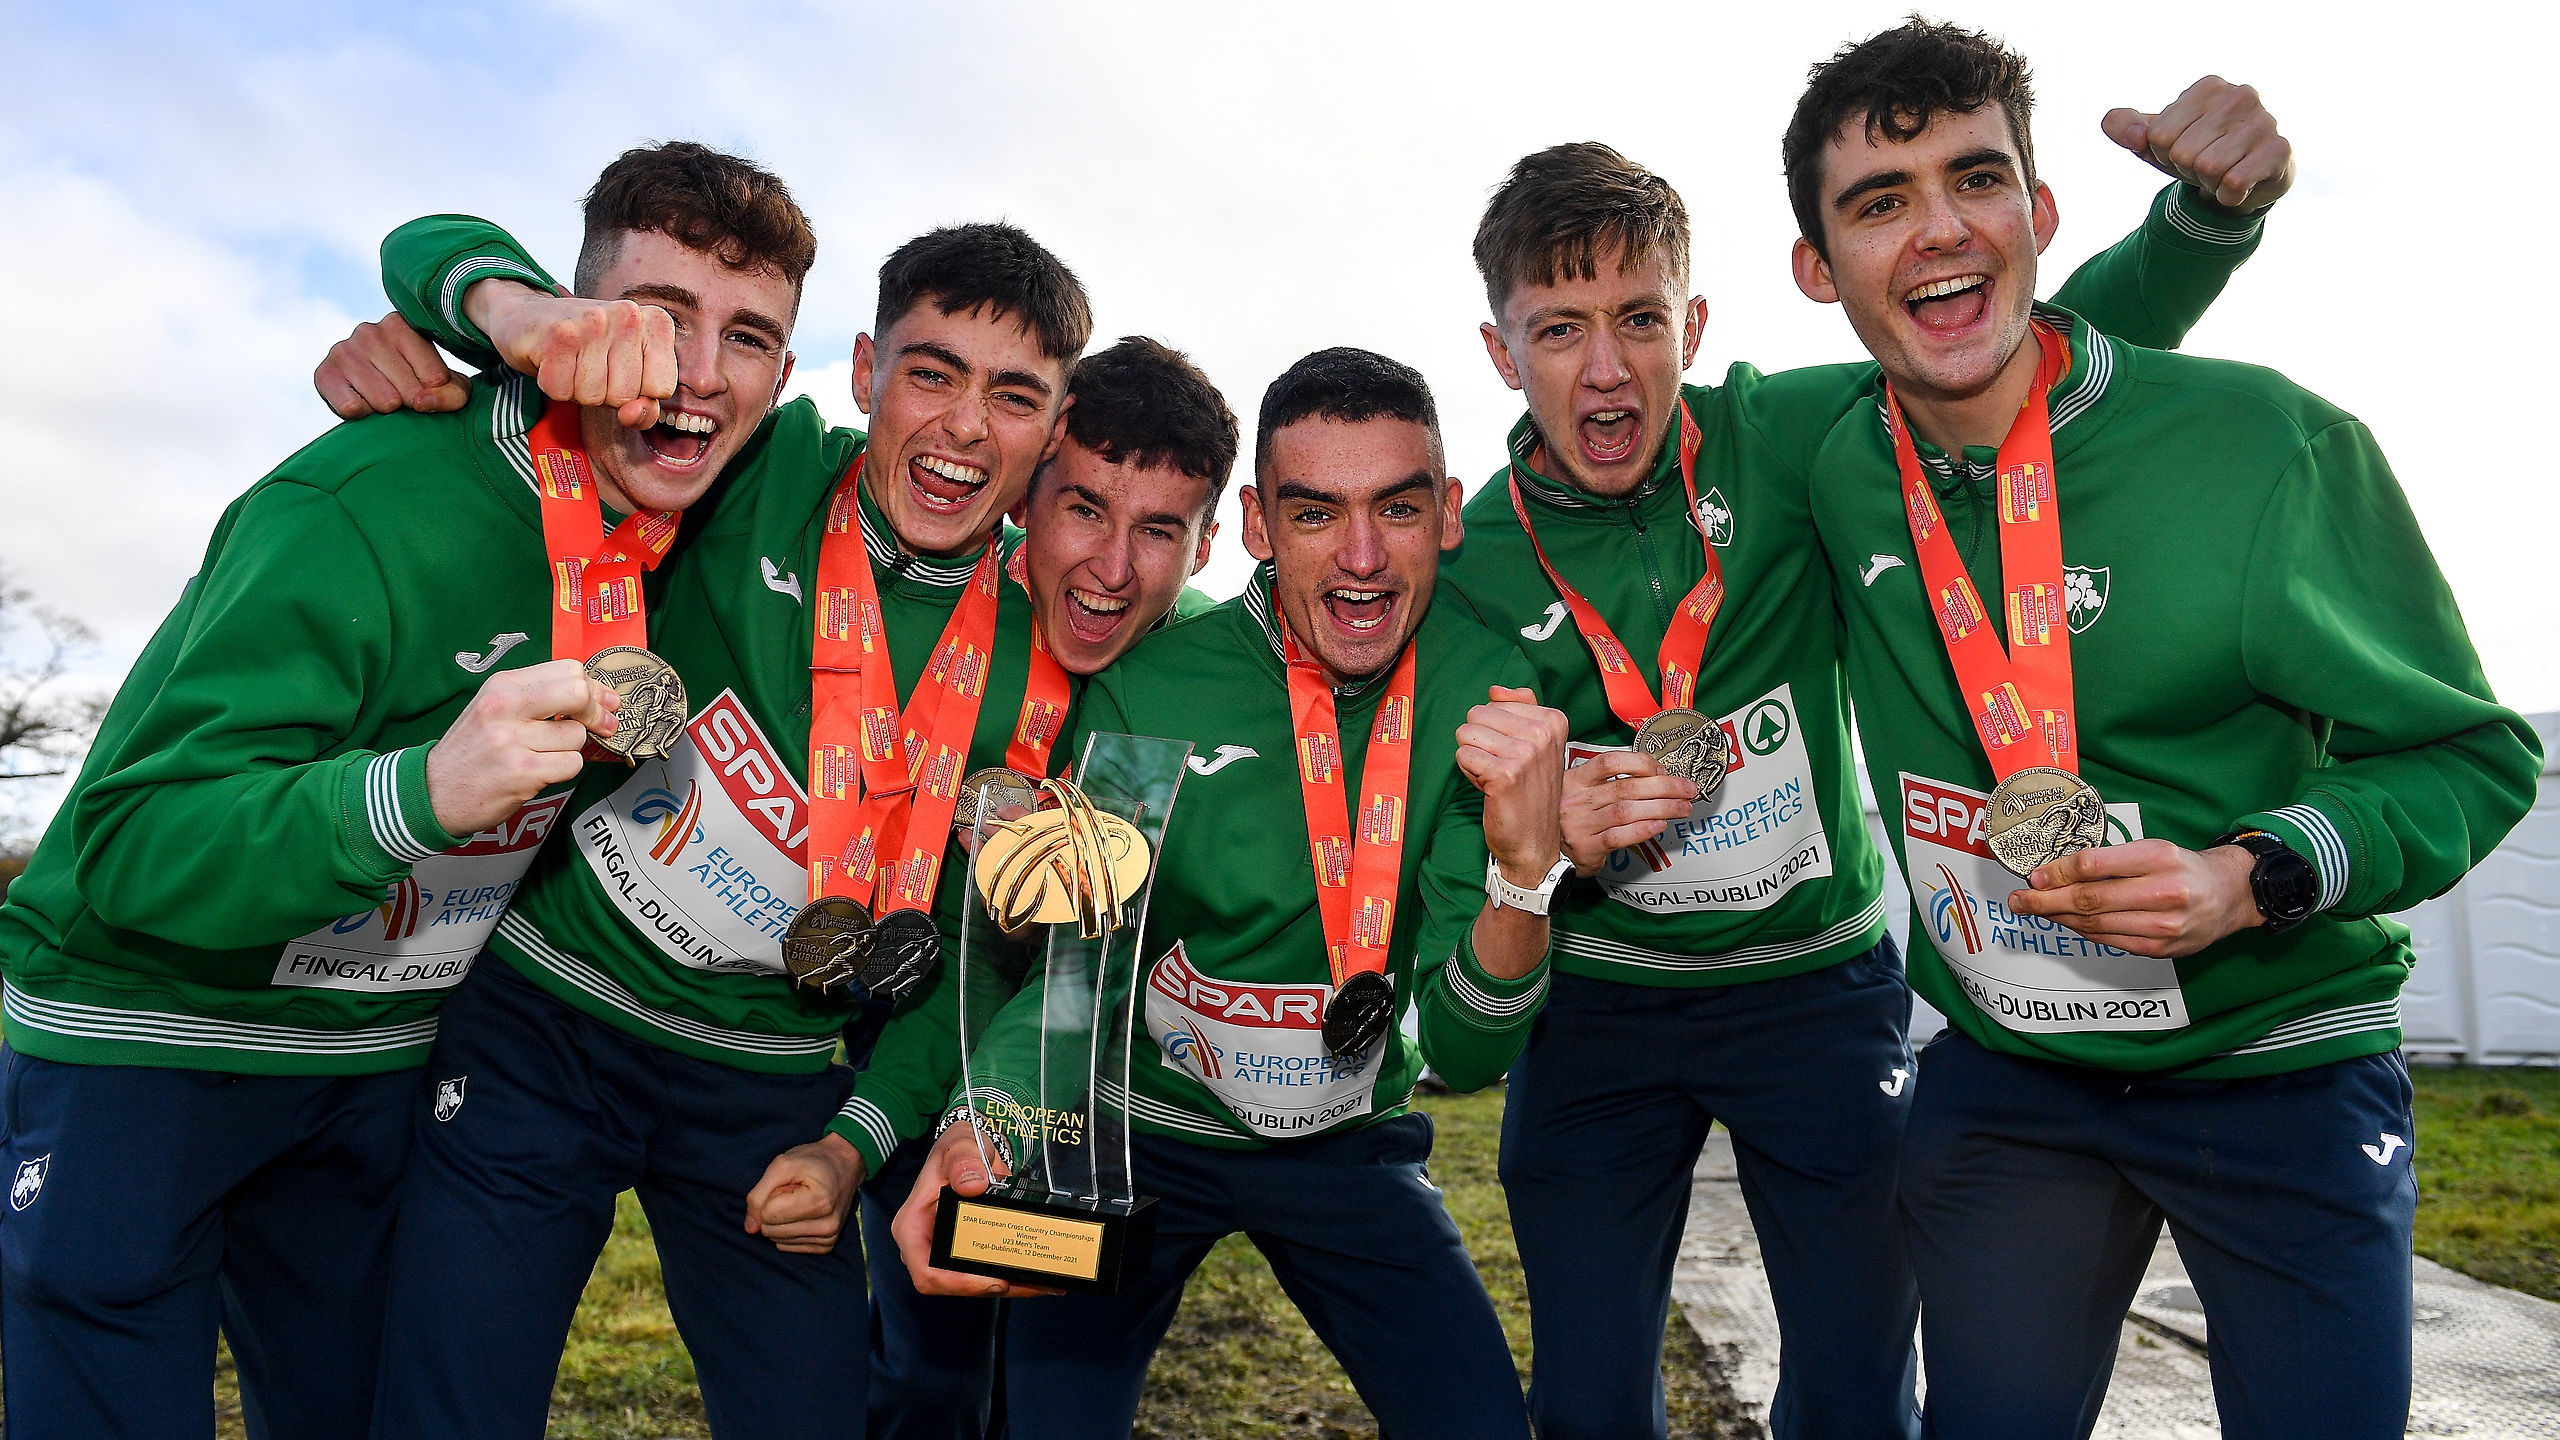 Irish Runner - Here's to Running